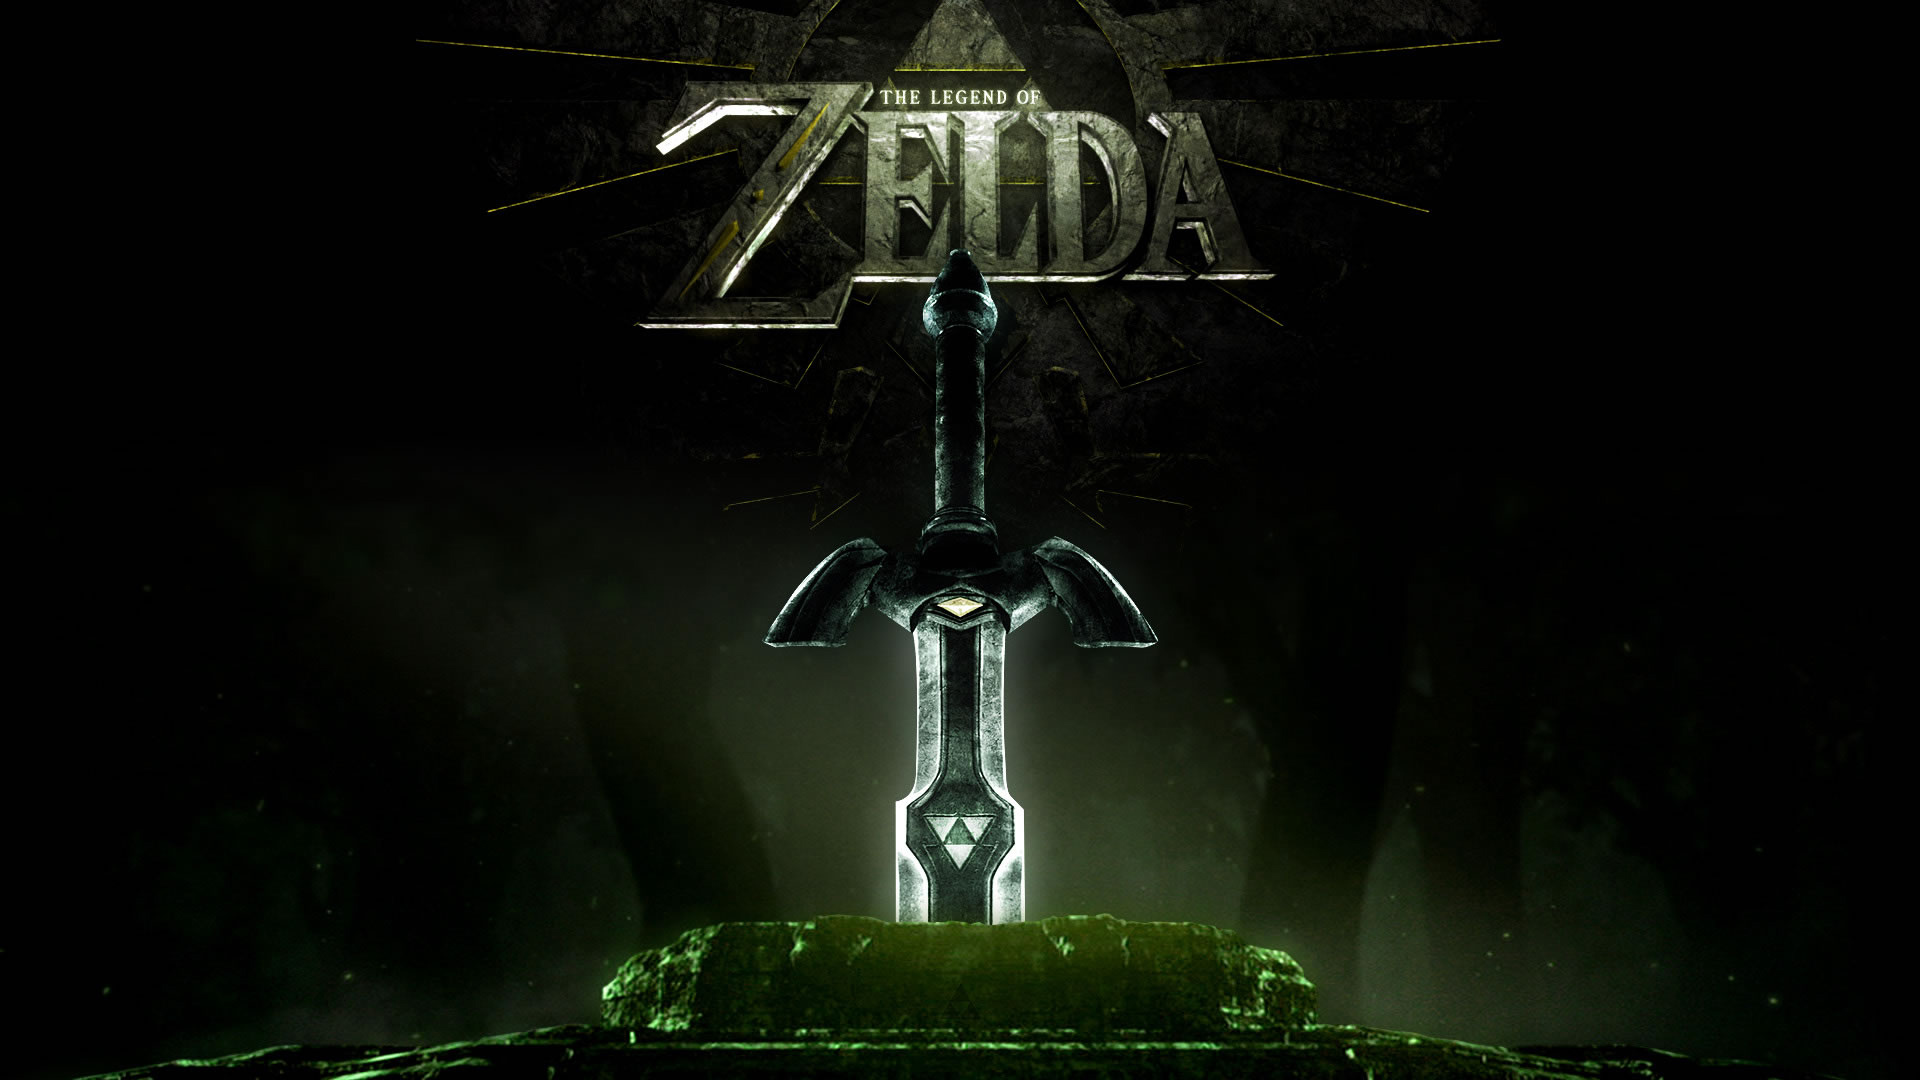 The Legend of Zelda Wallpapers HD Wallpapers